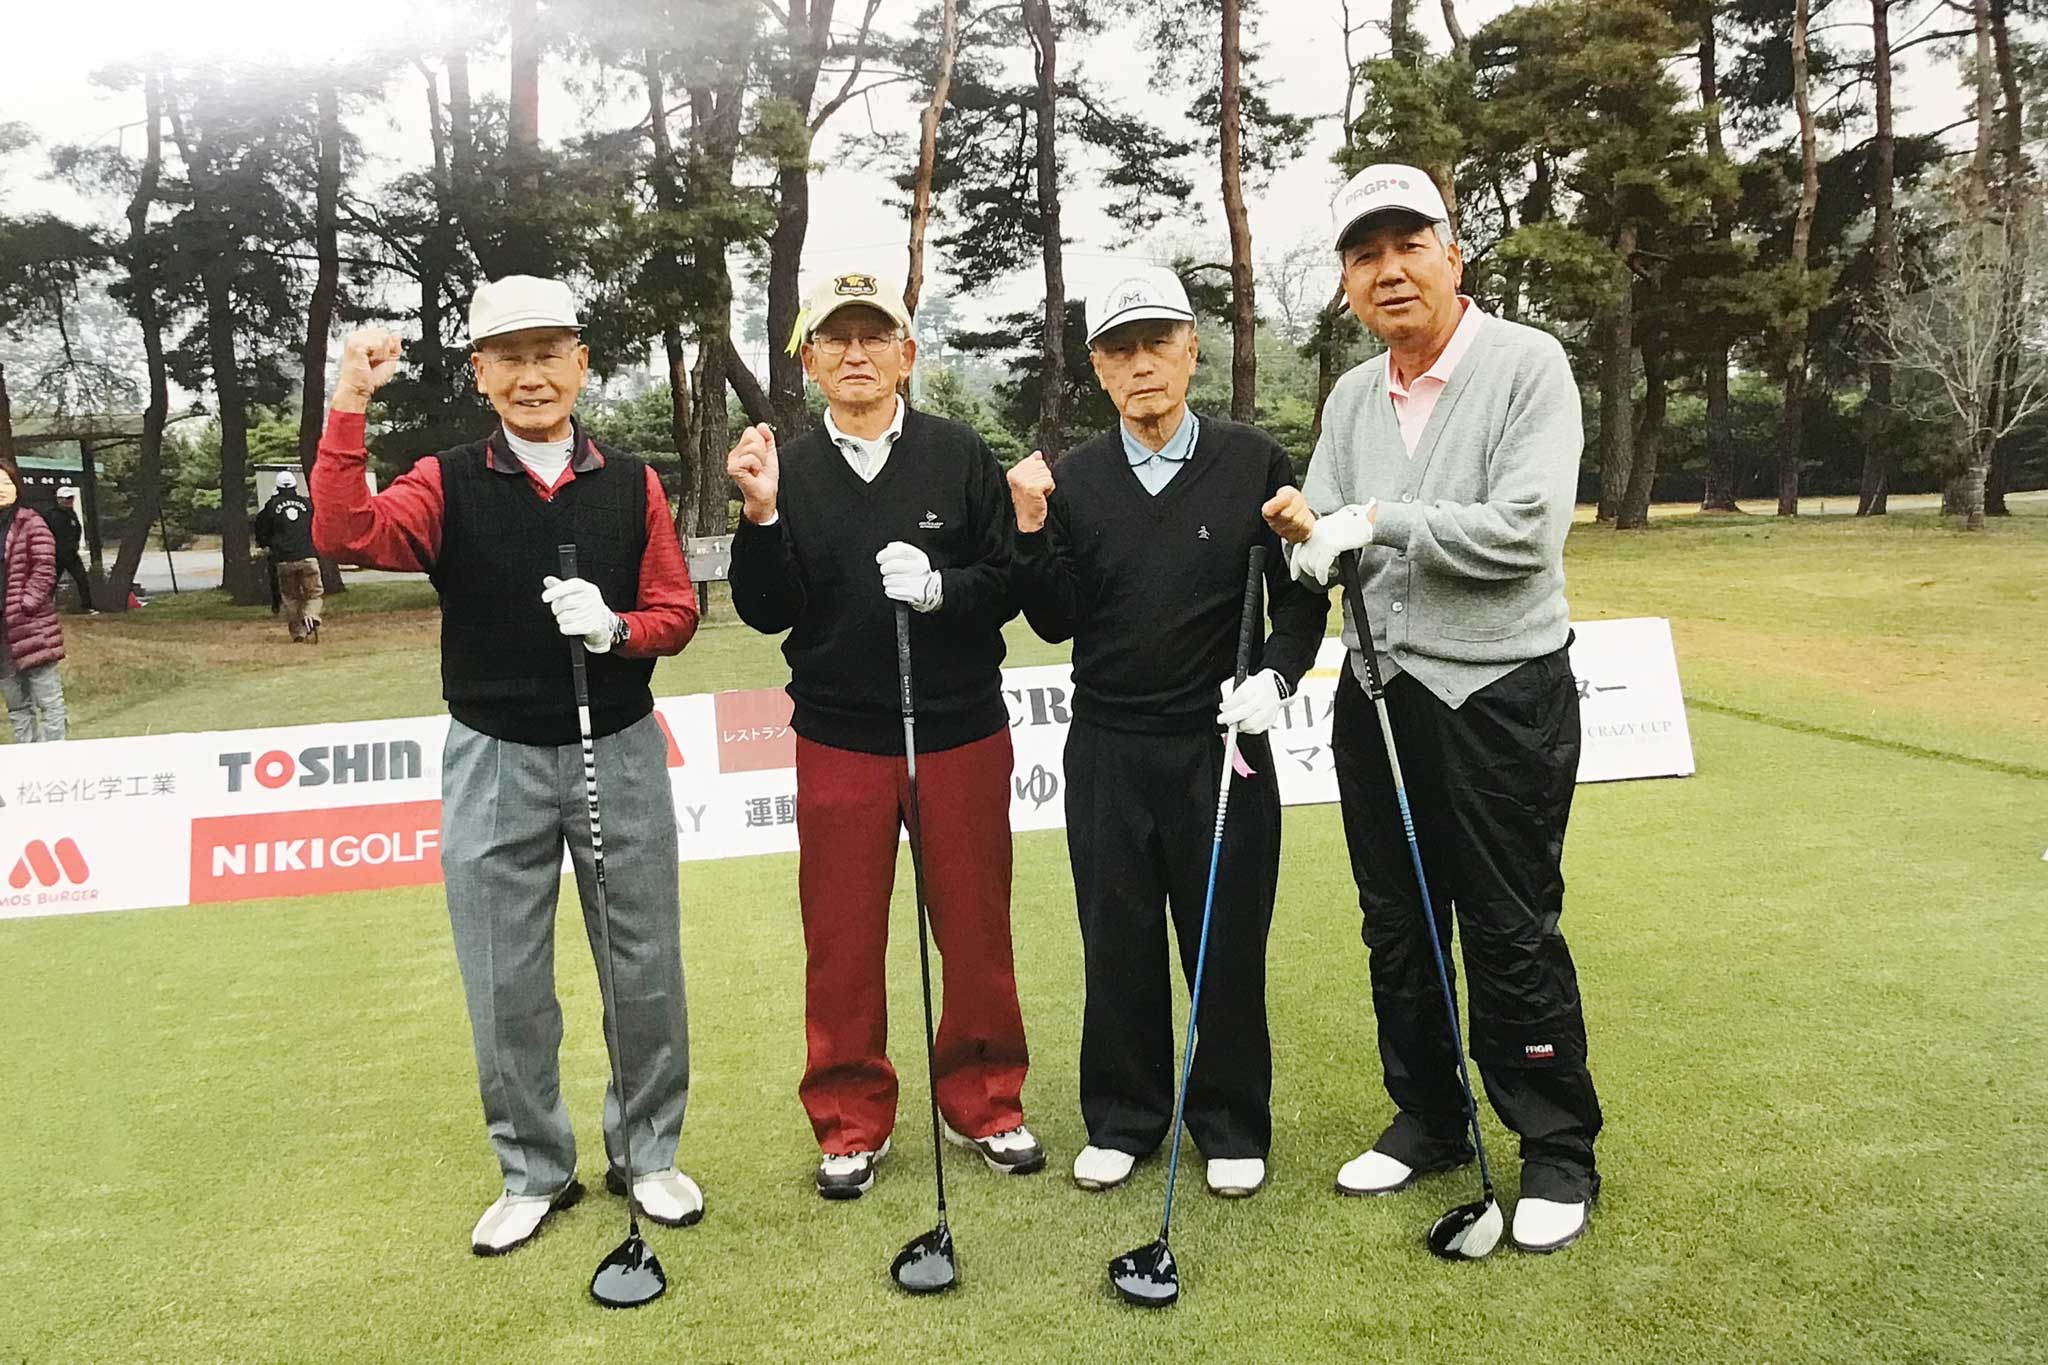 2012年 第2回全日本エージシューターマスターズゴルフ選手権記念写真